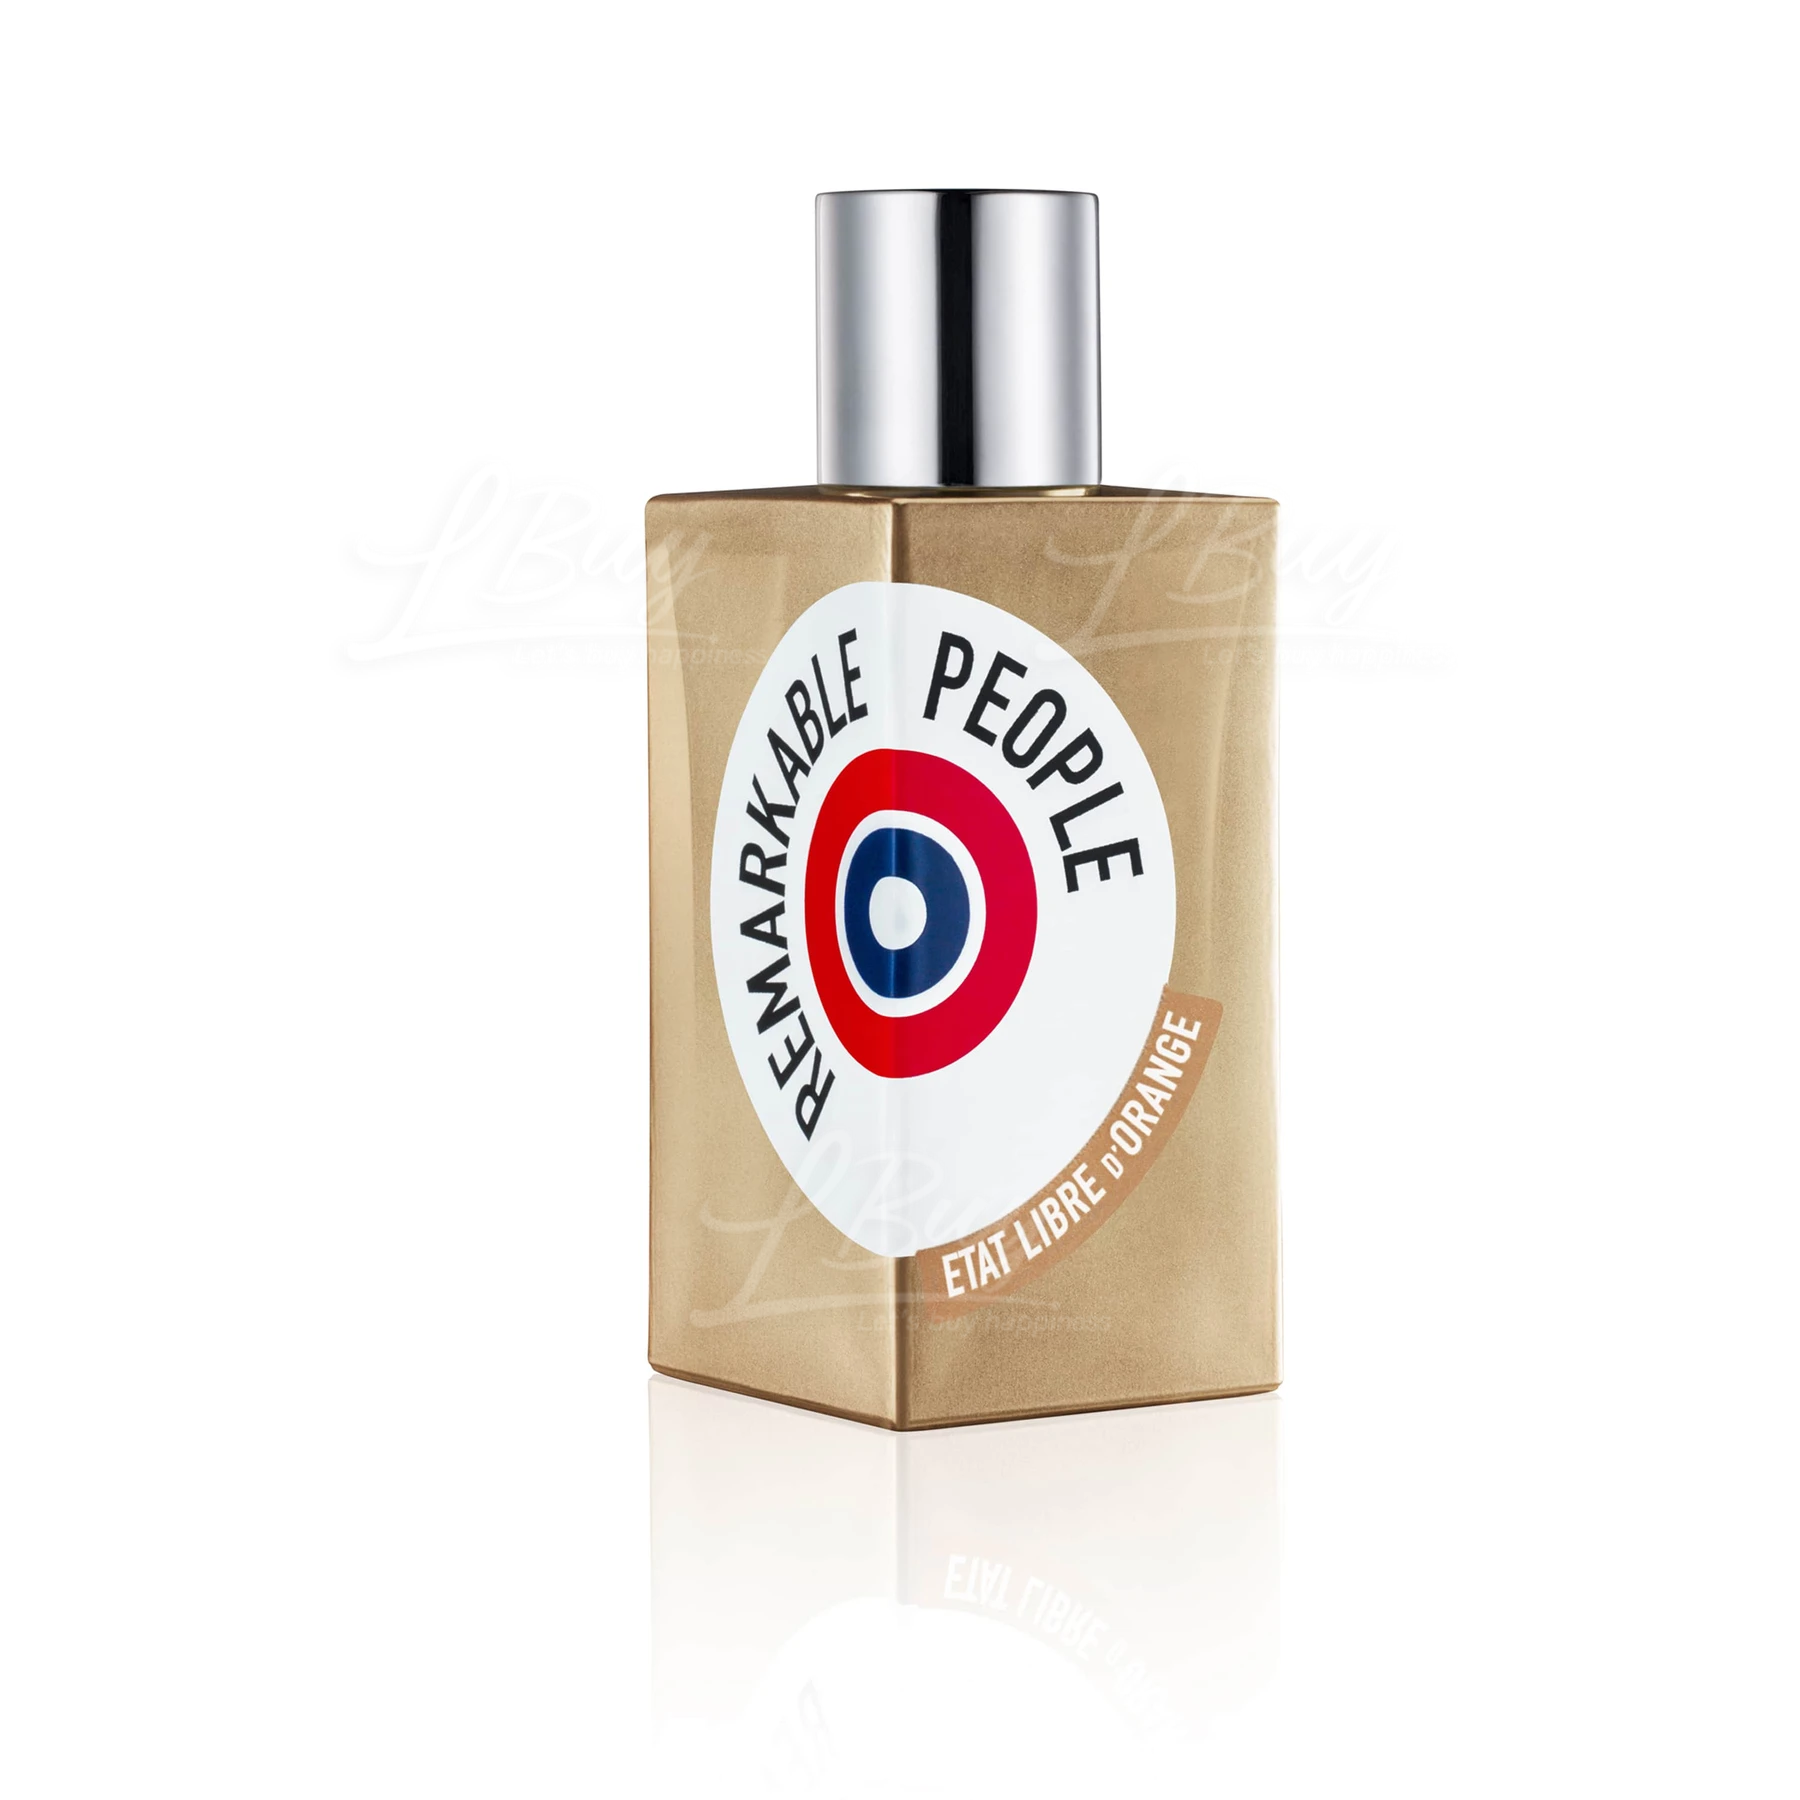 ETAT LIBRE D'ORANGE  Remarkable People  Eau de Parfum  50ml